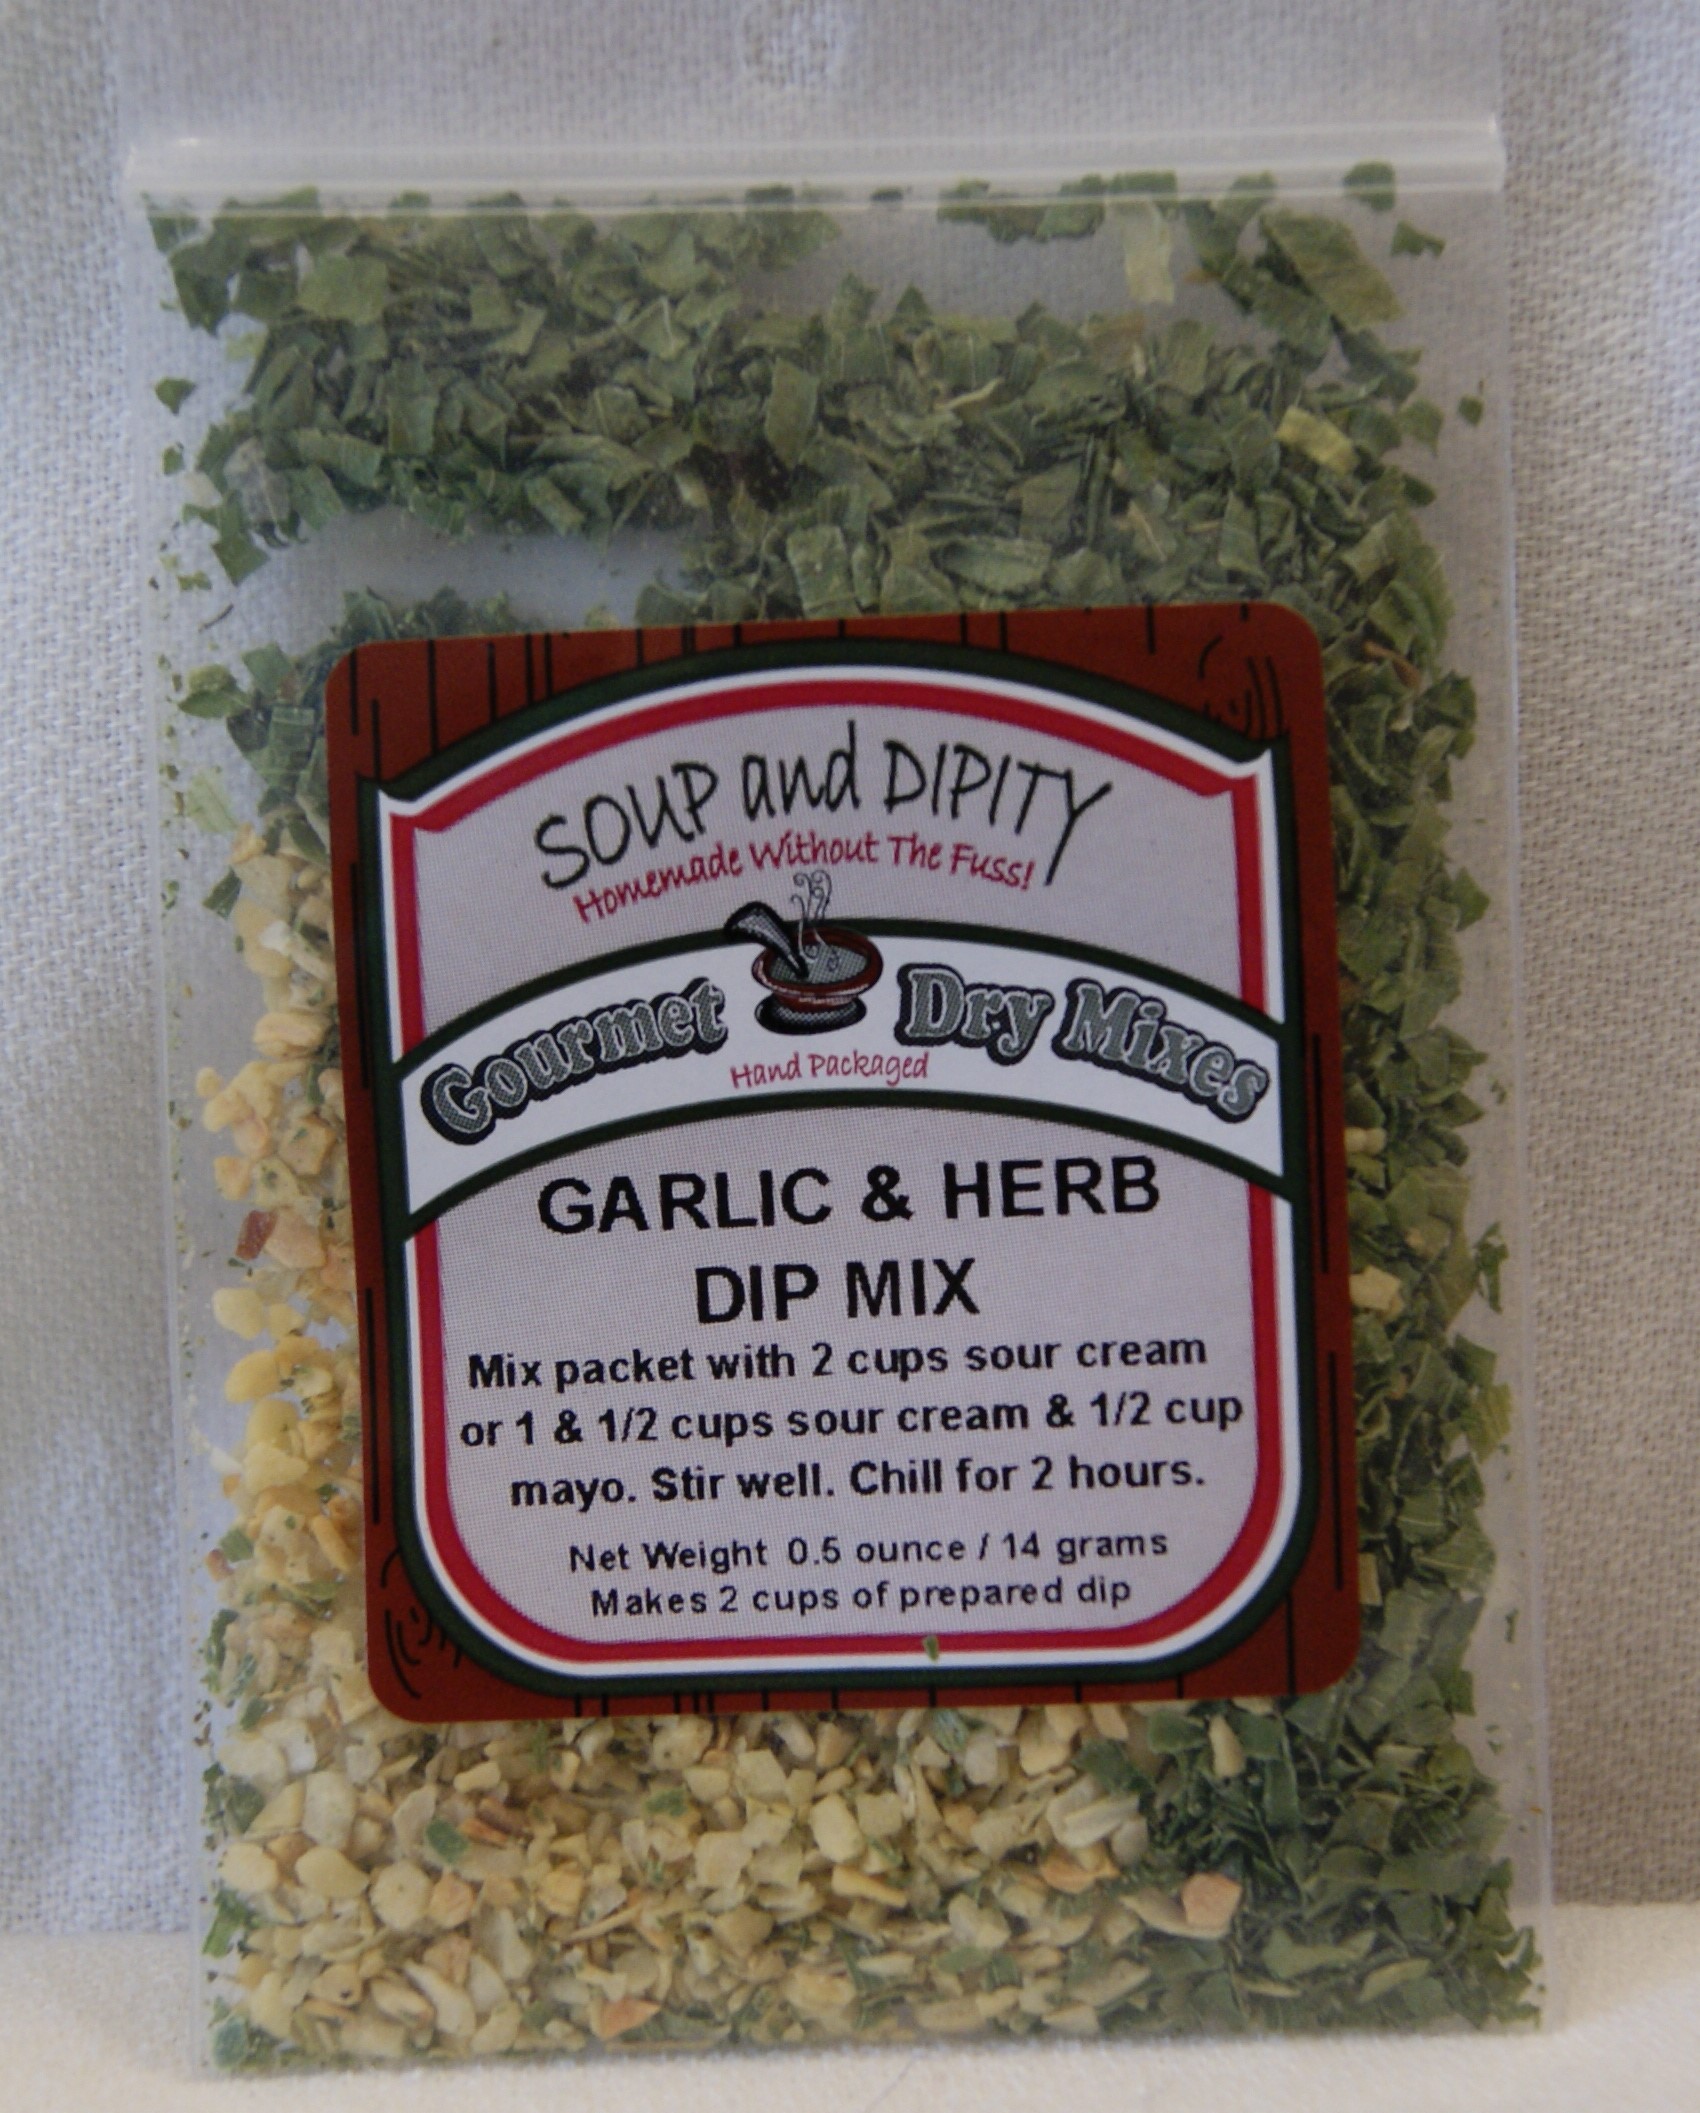 Garlic & Herb Dip Mix